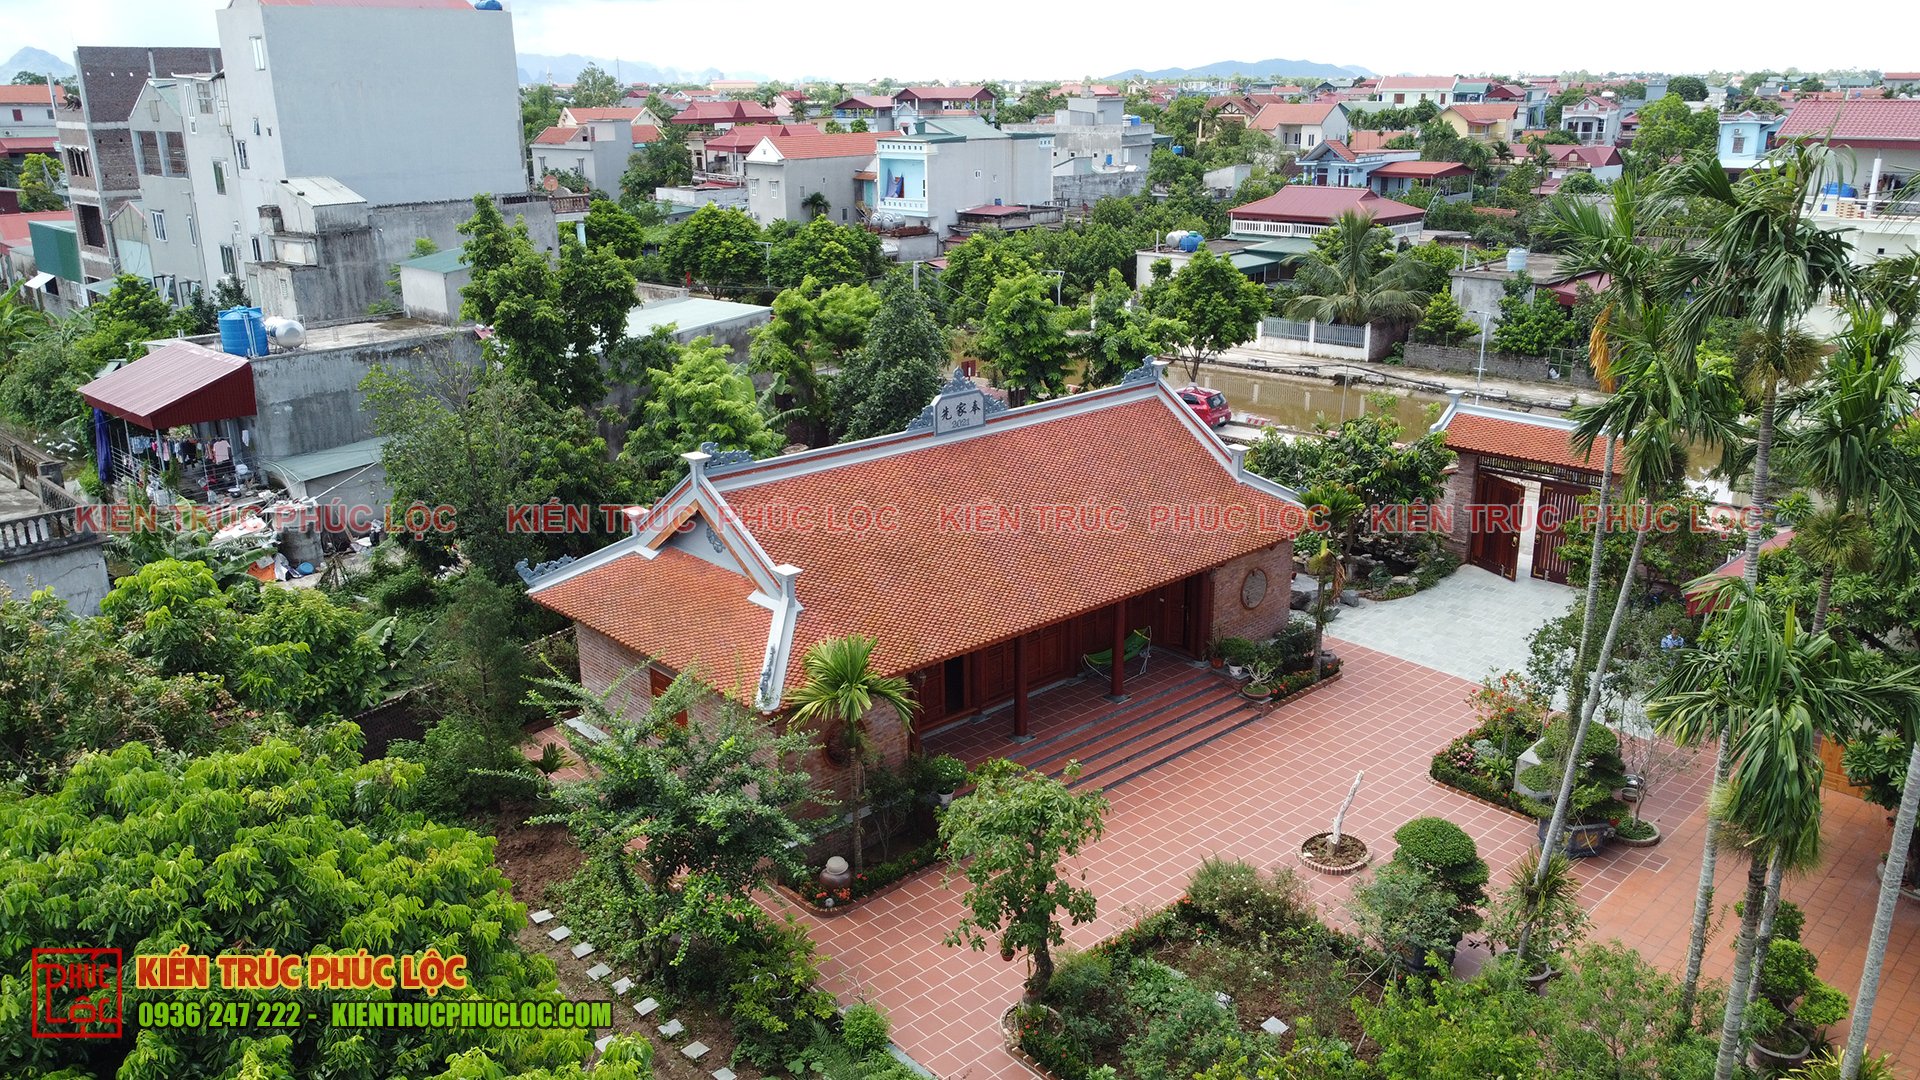 Mẫu thiết kế nhà vườn cấp 4 chữ L đẹp tại Long An - WEDO - Công ty Thiết kế  Thi công xây dựng chuyên nghiệp hàng đầu Việt Nam